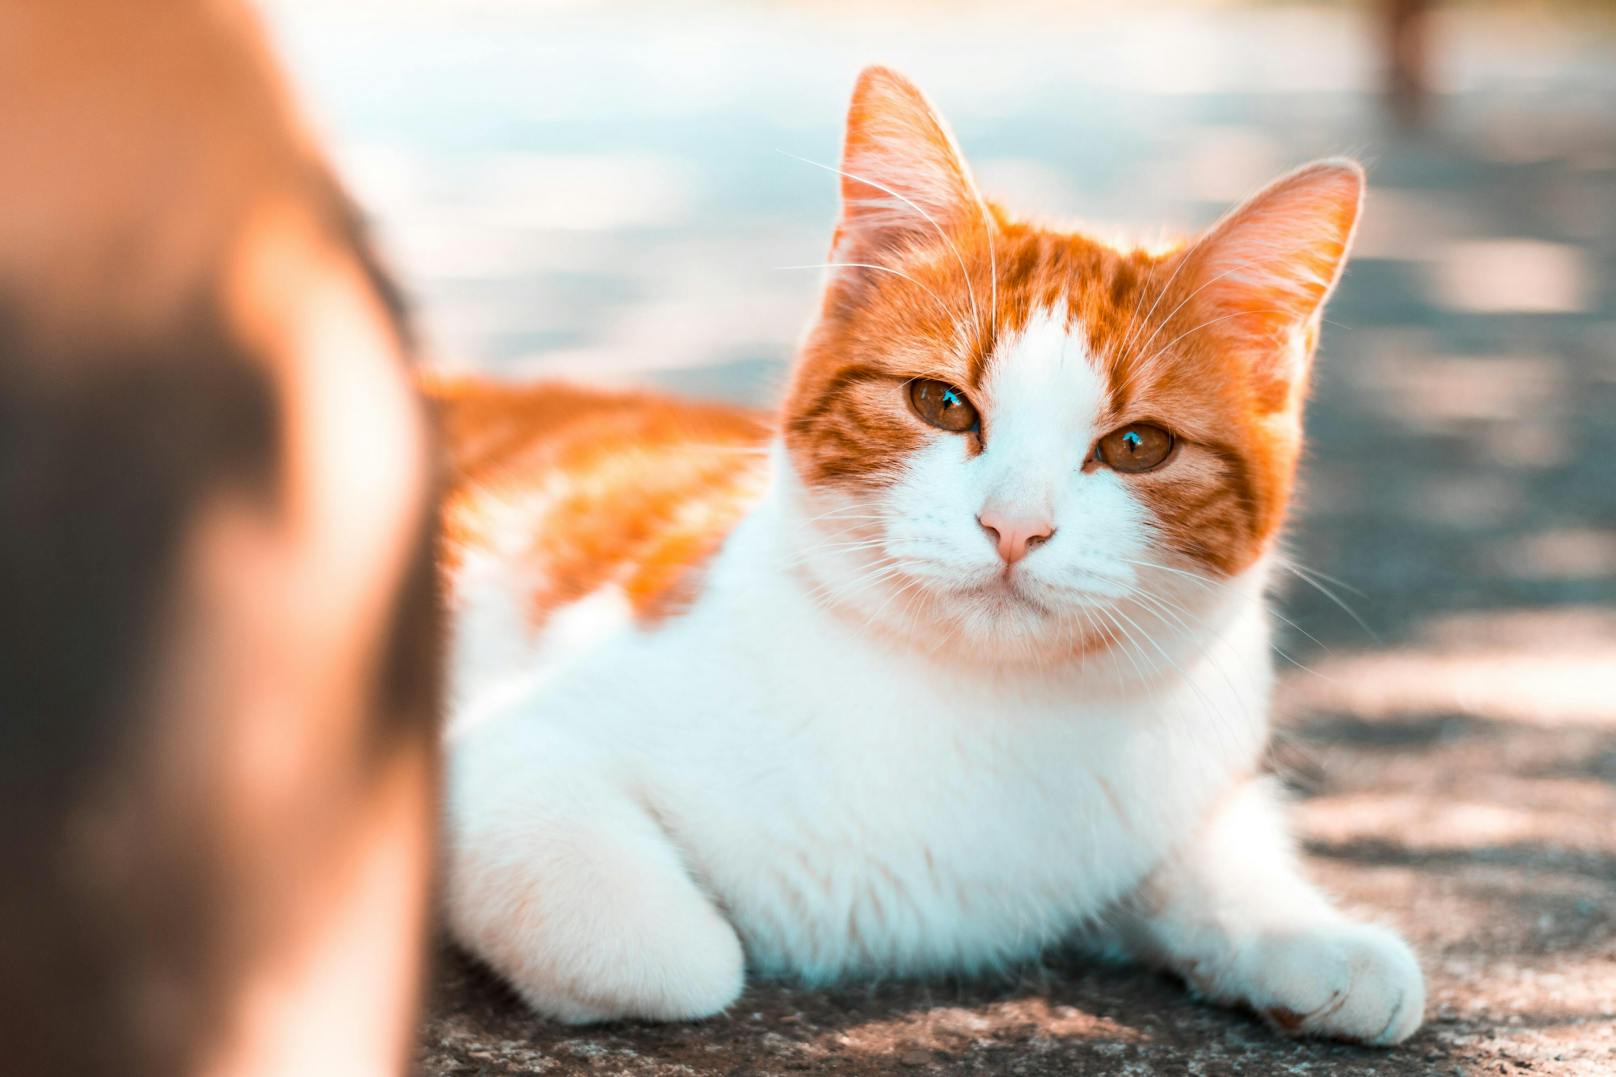 Ein vorwurfsvoller Blick, ein wütender Tatzenhieb oder schmollendes Verhalten: Manche Katzen können es nicht ertragen, nicht die unbegrenzte Aufmerksamkeit ihres Besitzers zu genießen. 